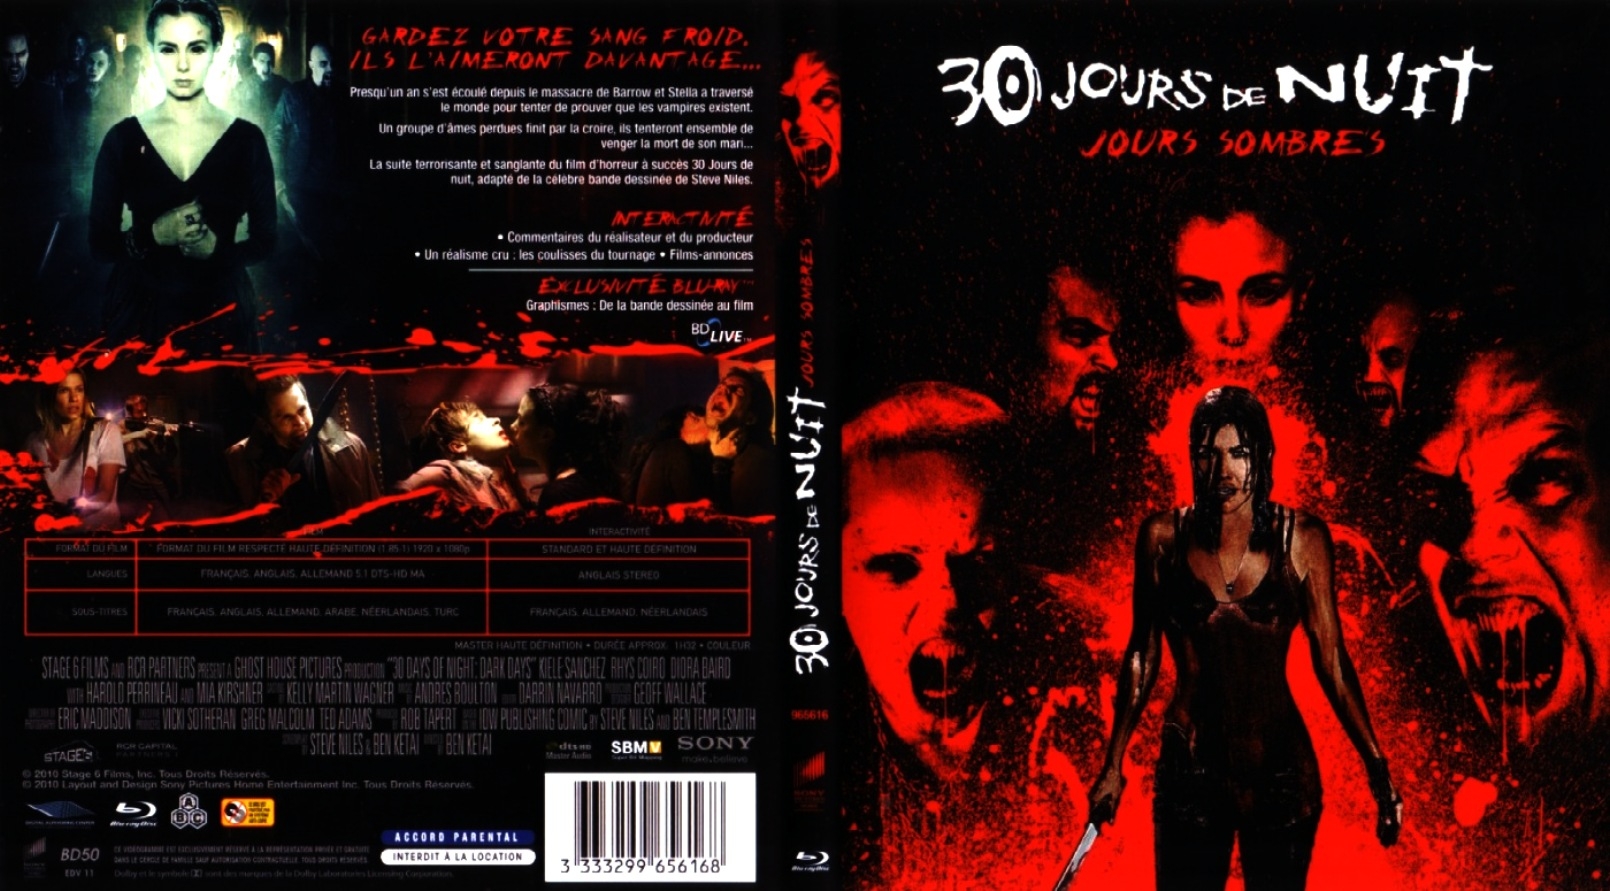 Jaquette DVD 30 jours de nuit - Jours sombres (BLU-RAY)